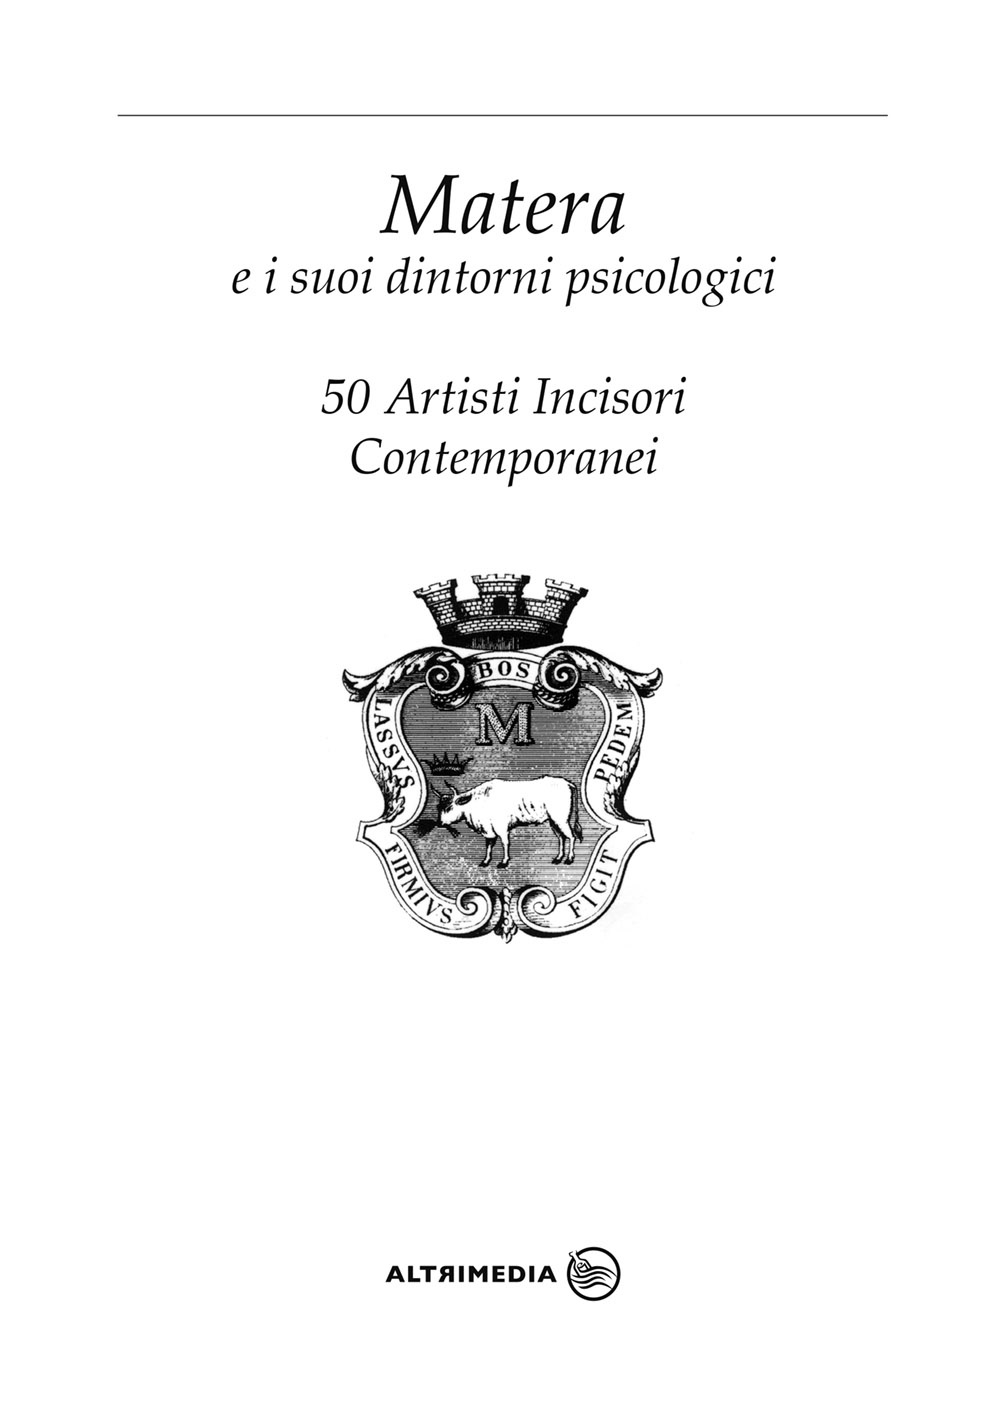 “Matera e i suoi dintorni psicologici. 50 artisti incisori contemporanei”, la nuova edizione del catalogo della mostra